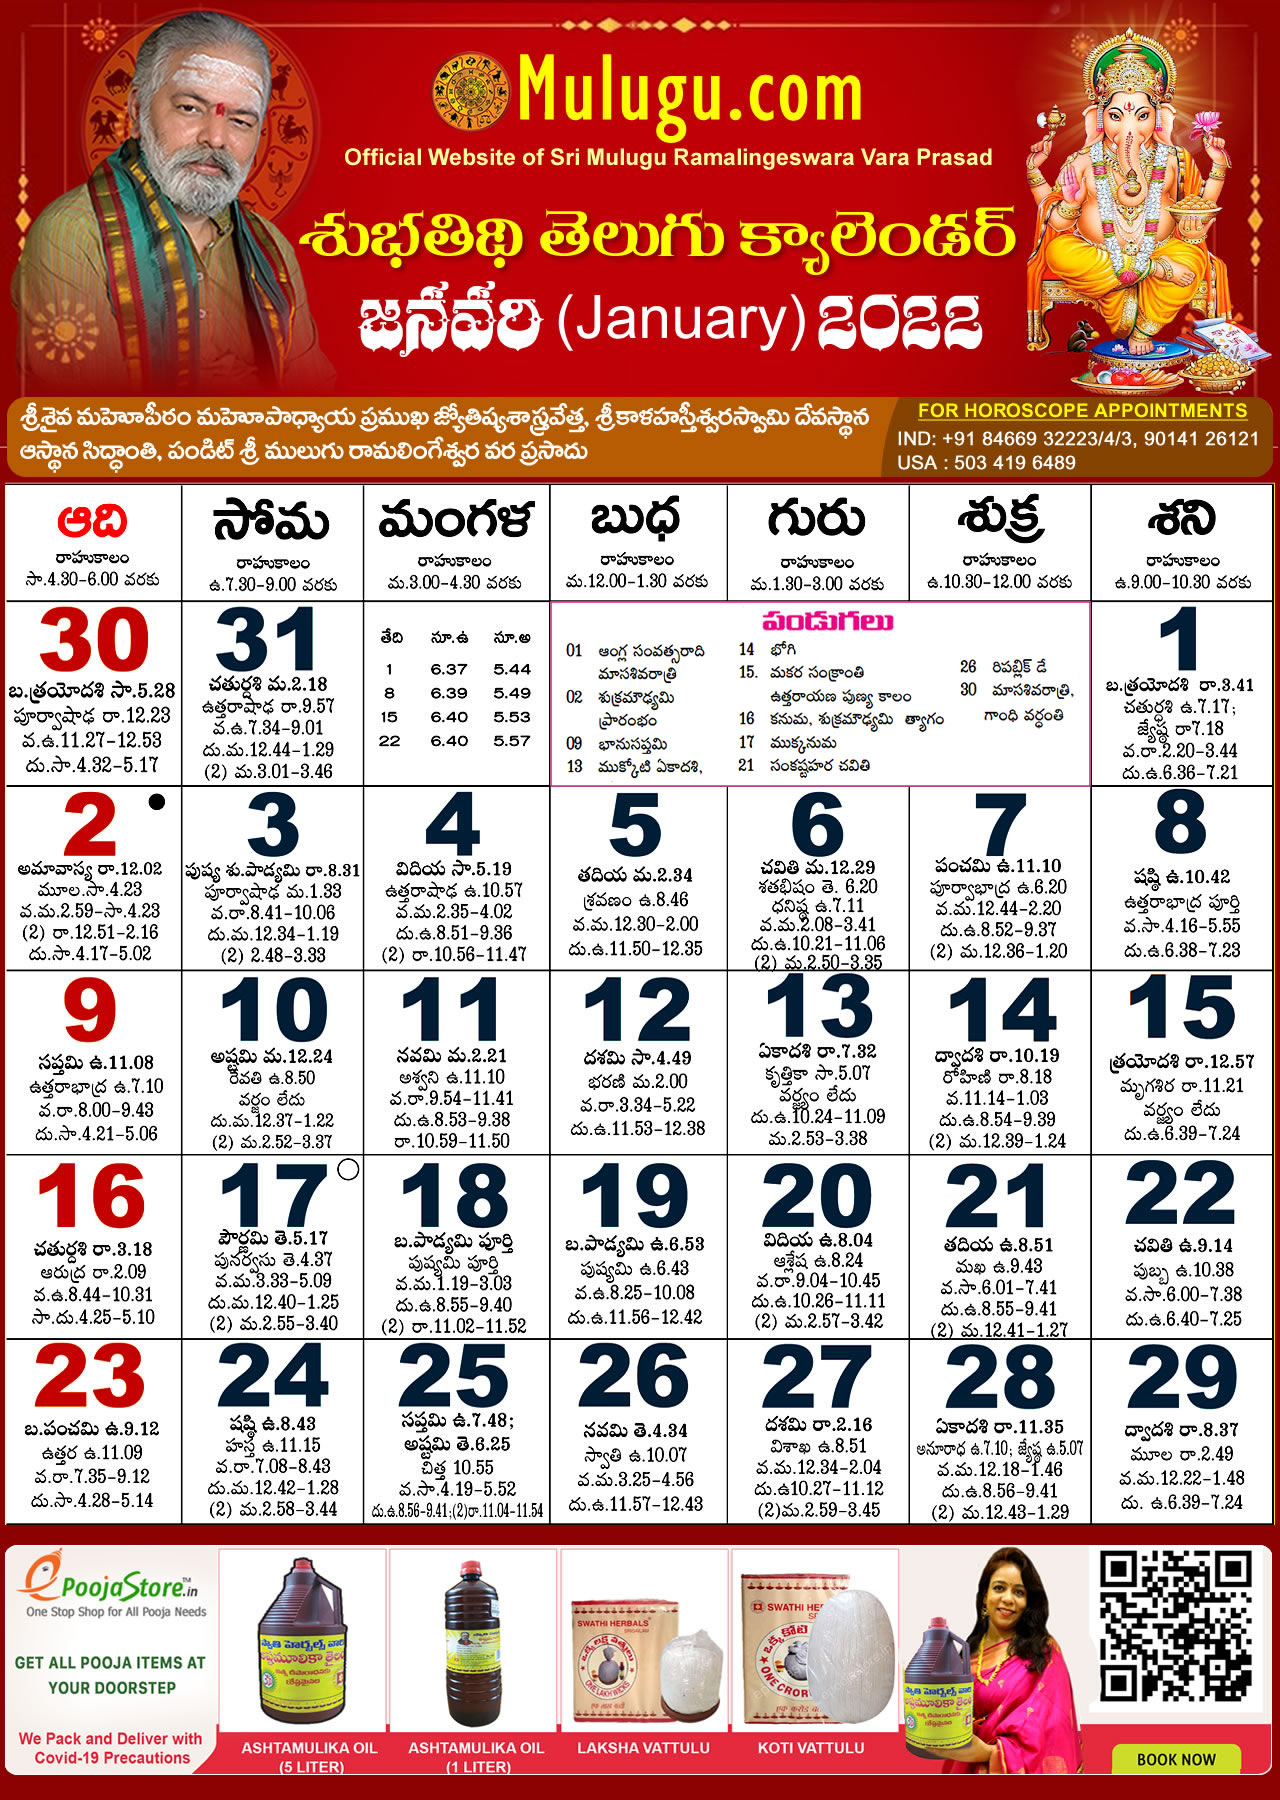 Mulugu Telugu Calendar 2022 Chicago Subhathidi January Telugu Calendar 2022 | Telugu Calendar 2022 - 2023 |  Telugu Subhathidi Calendar 2022 | Calendar 2022 | Telugu Calendar 2022 |  Subhathidi Calendar 2022 - Chicago Calendar 2022 Los